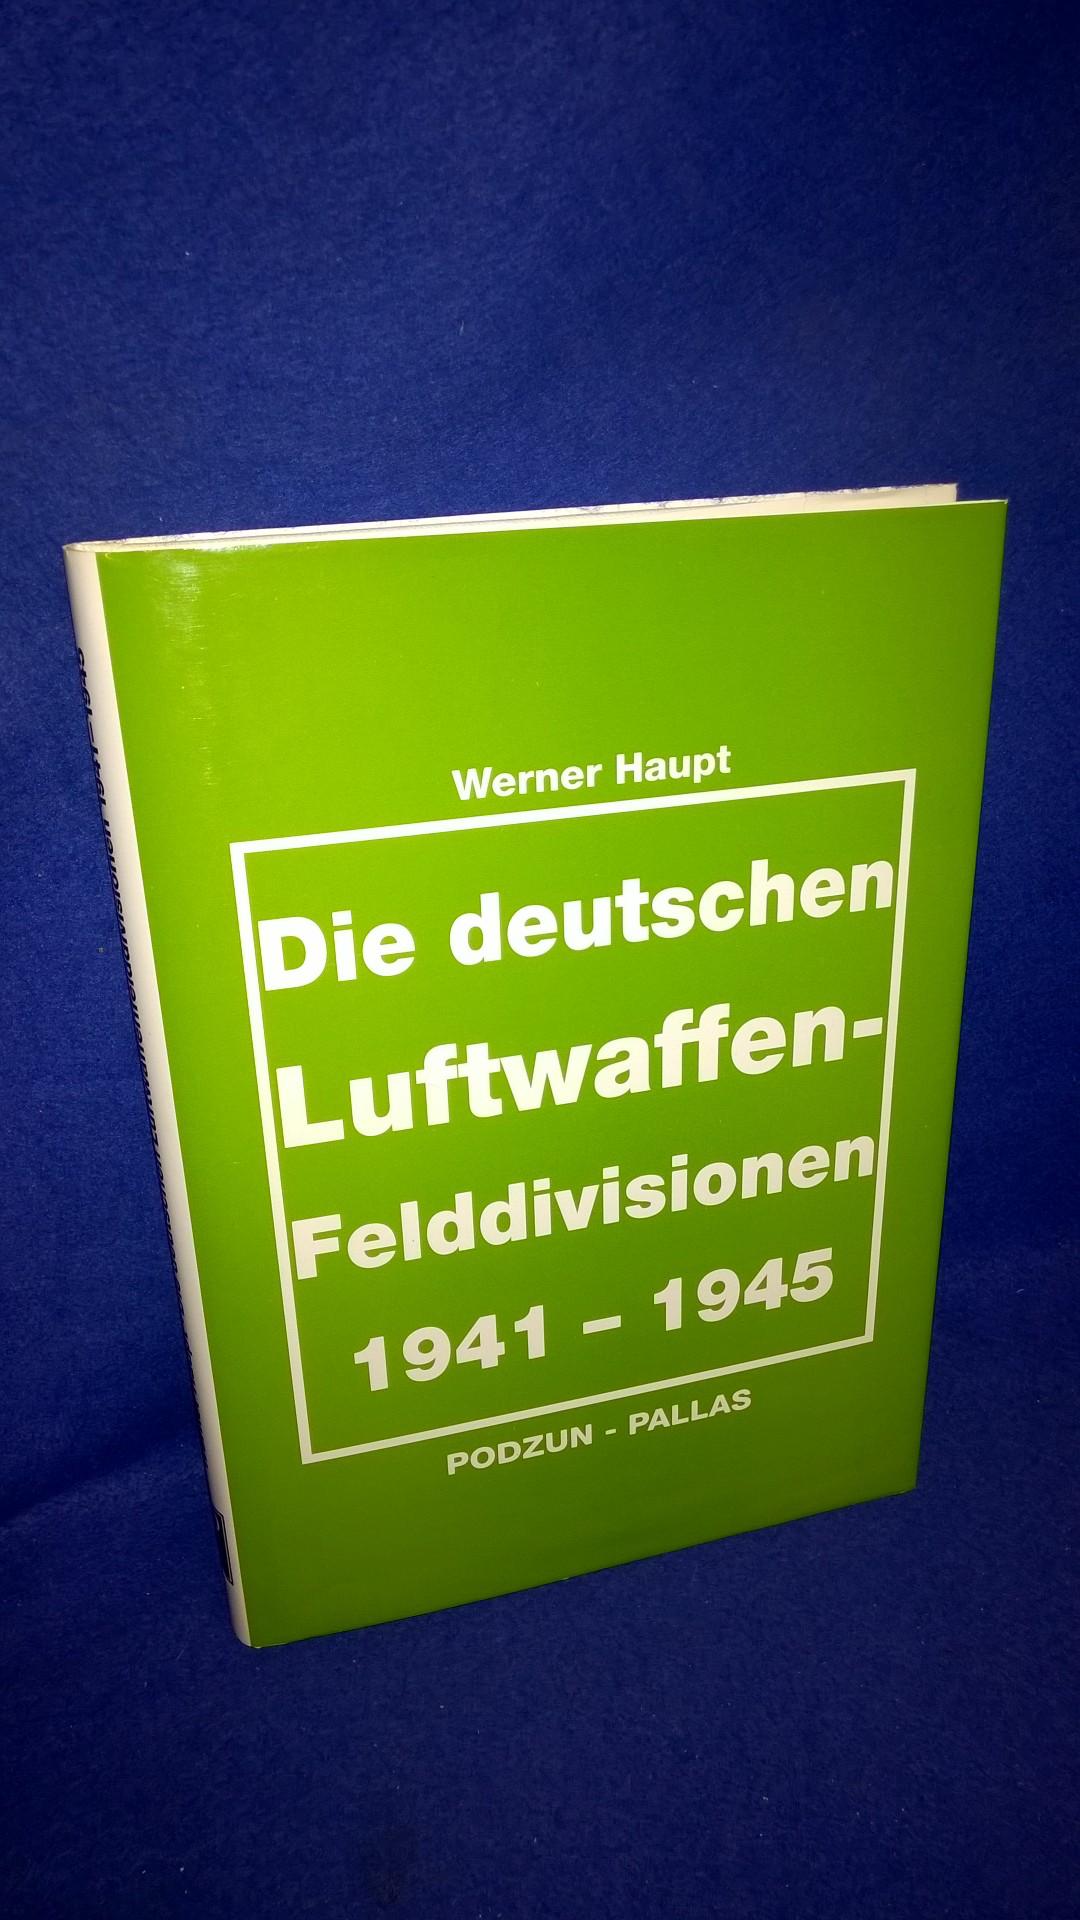 Die deutschen Luftwaffen-Felddivisionen 1941 - 1945.